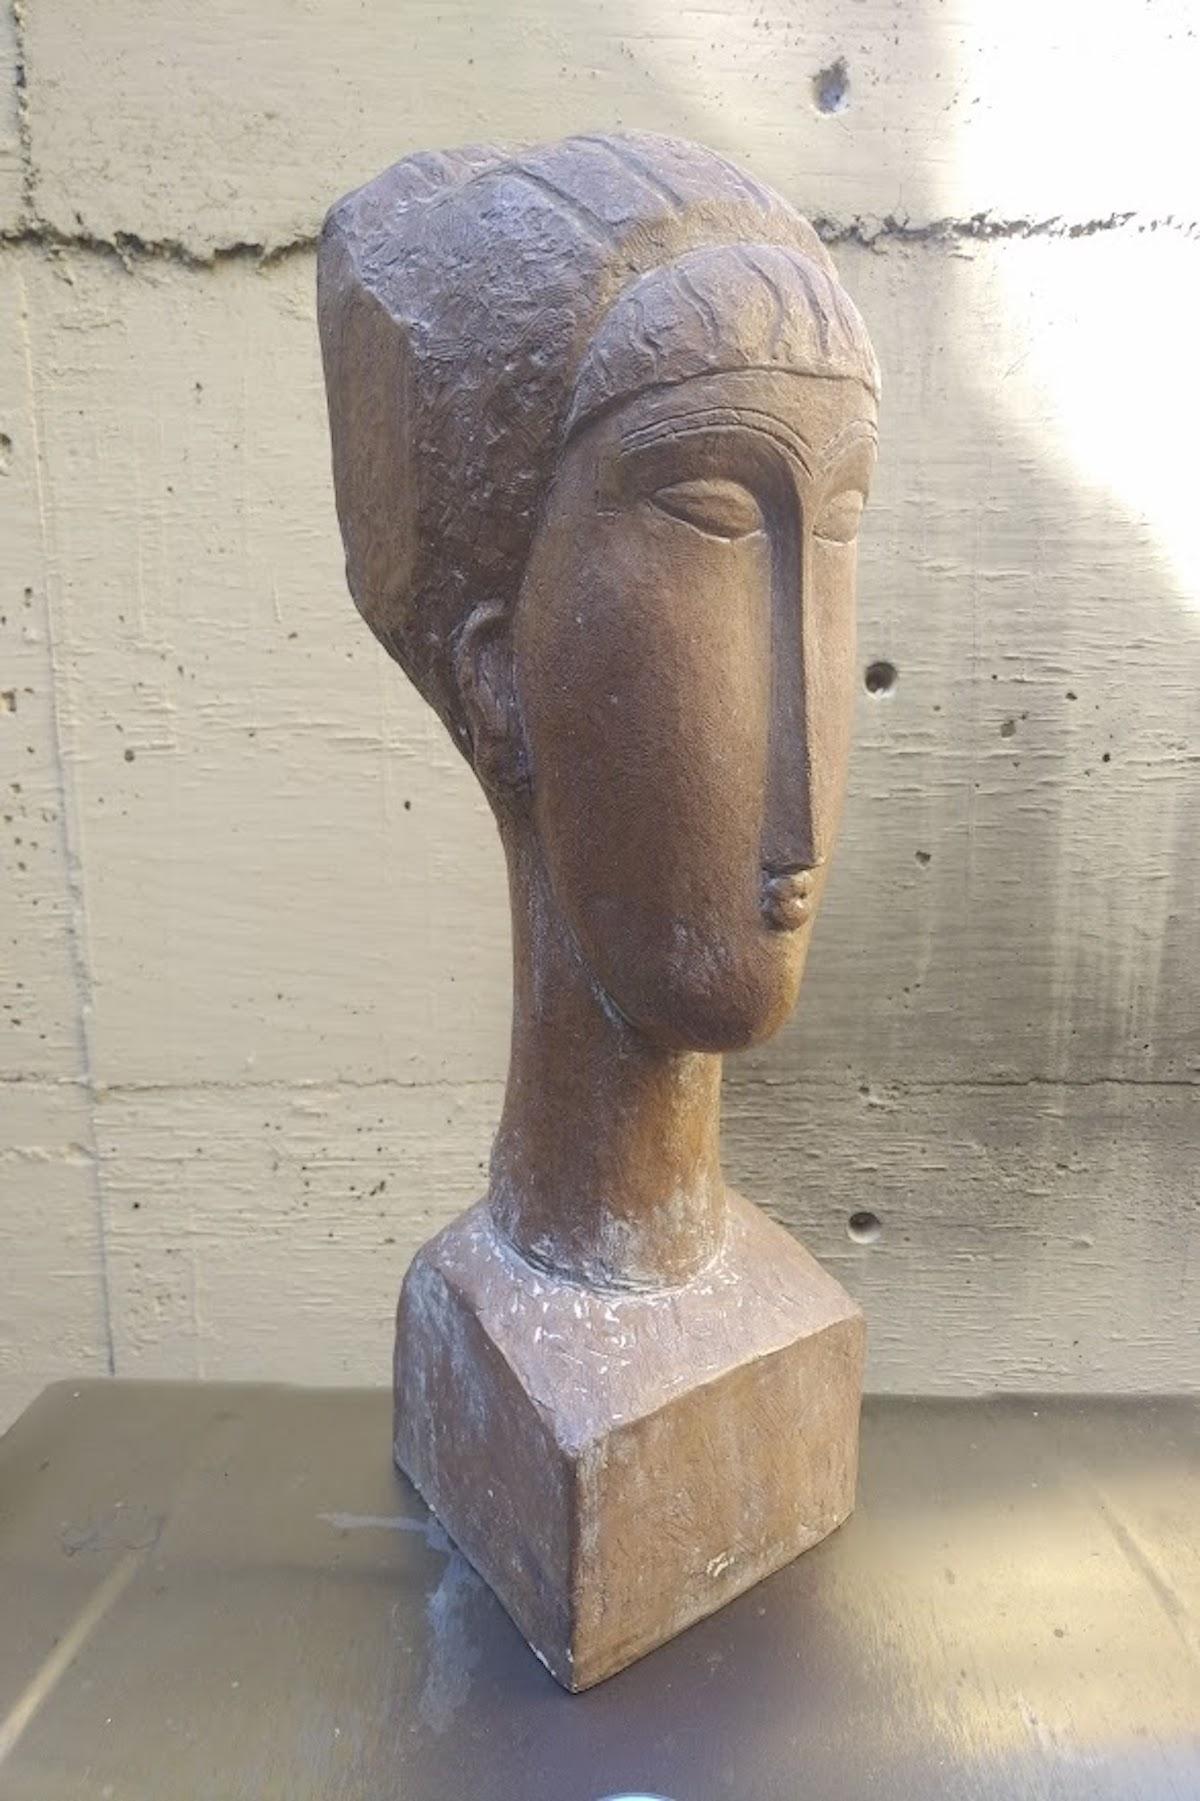 Amedeo Modigliani Figurative Sculpture – Austin Productions 1961, nach Modigliani, Skulptur Tete de Femme, limitierte Auflage.